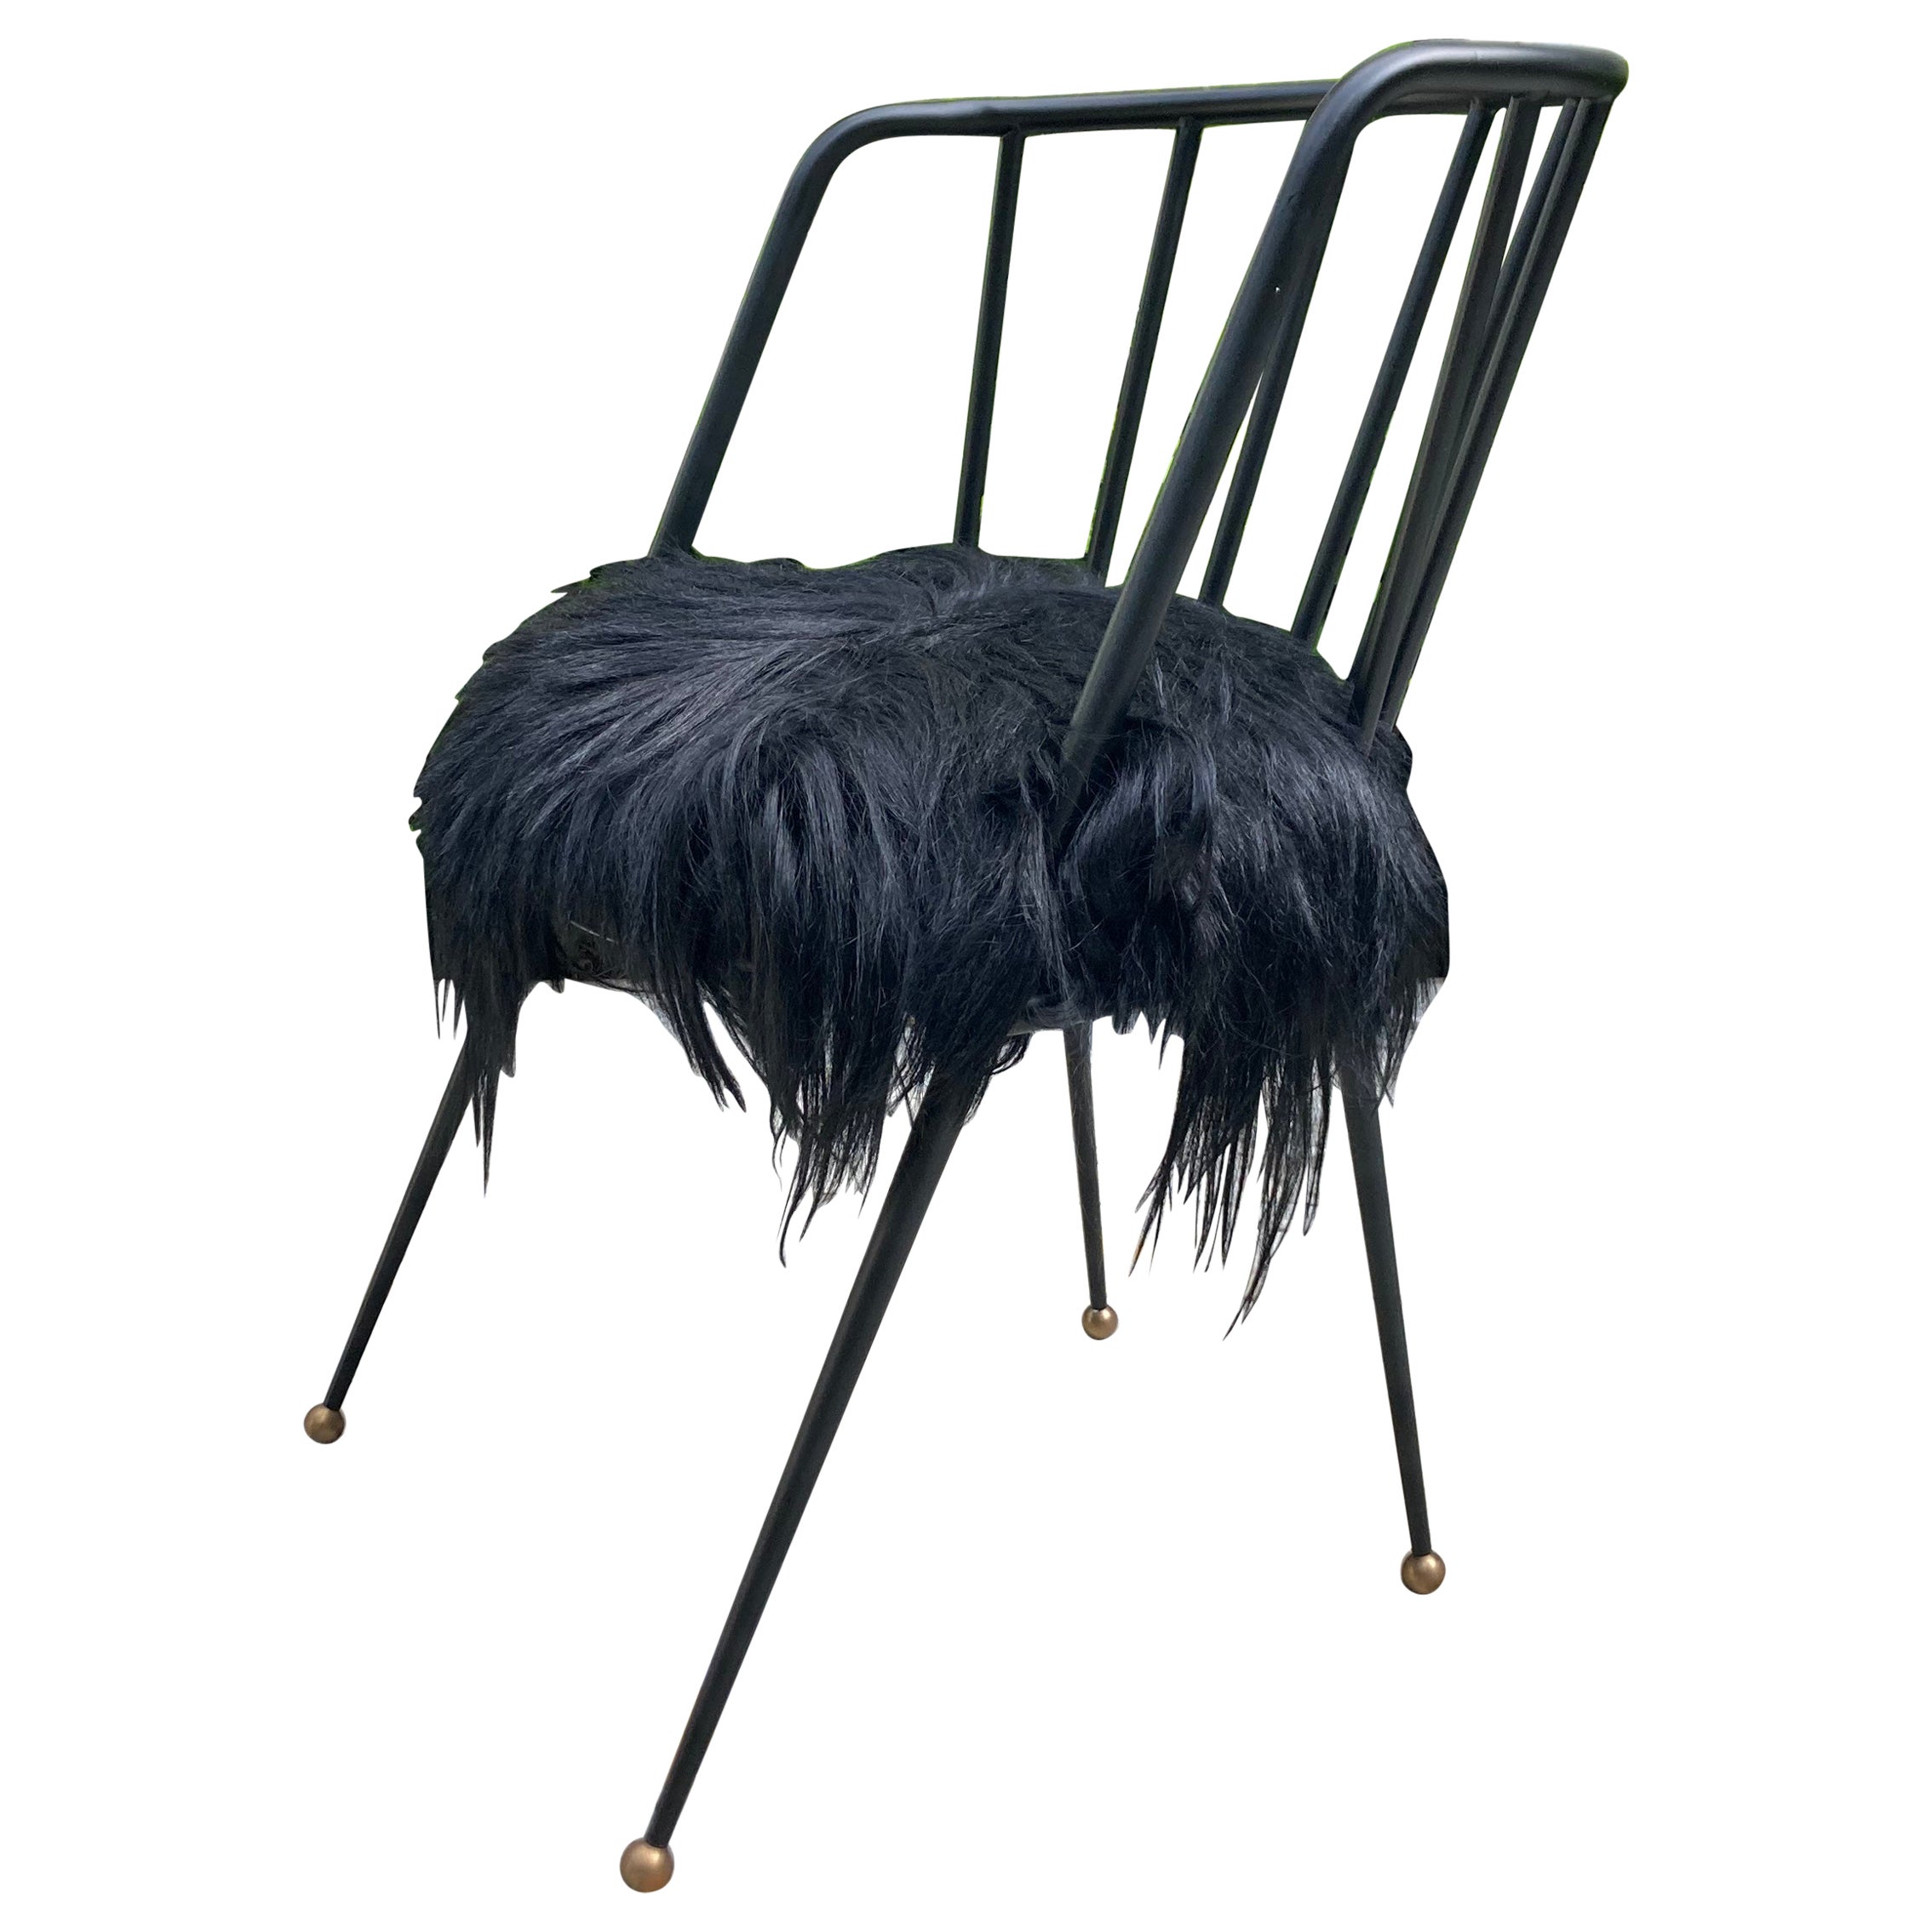 Malibu Chair by Kelly Wearstler, Black